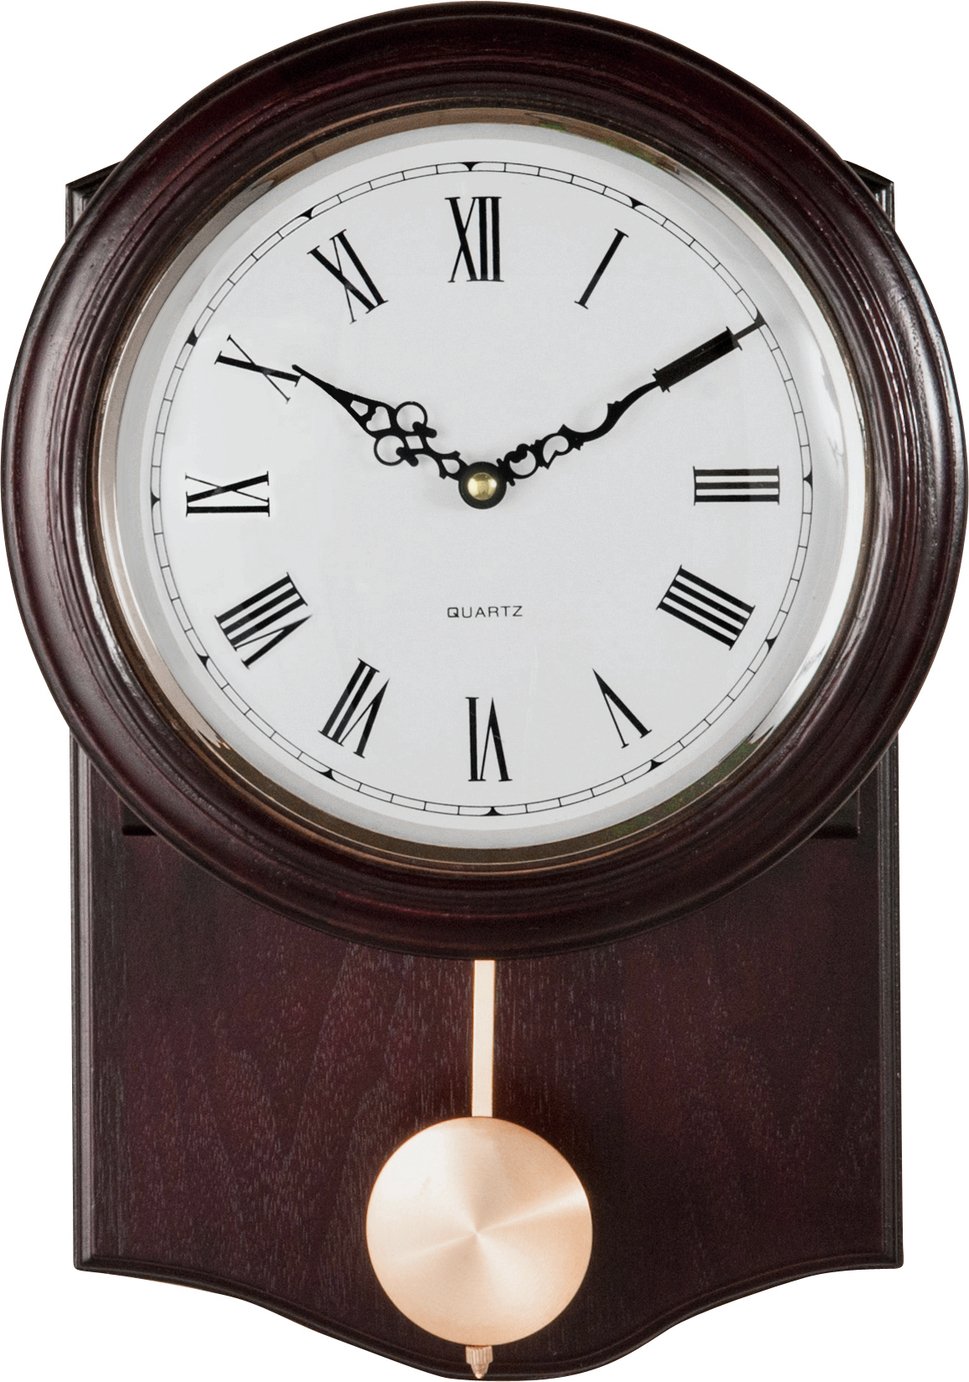 Argos Home Pendulum Wall Clock - Dark Oak Effect